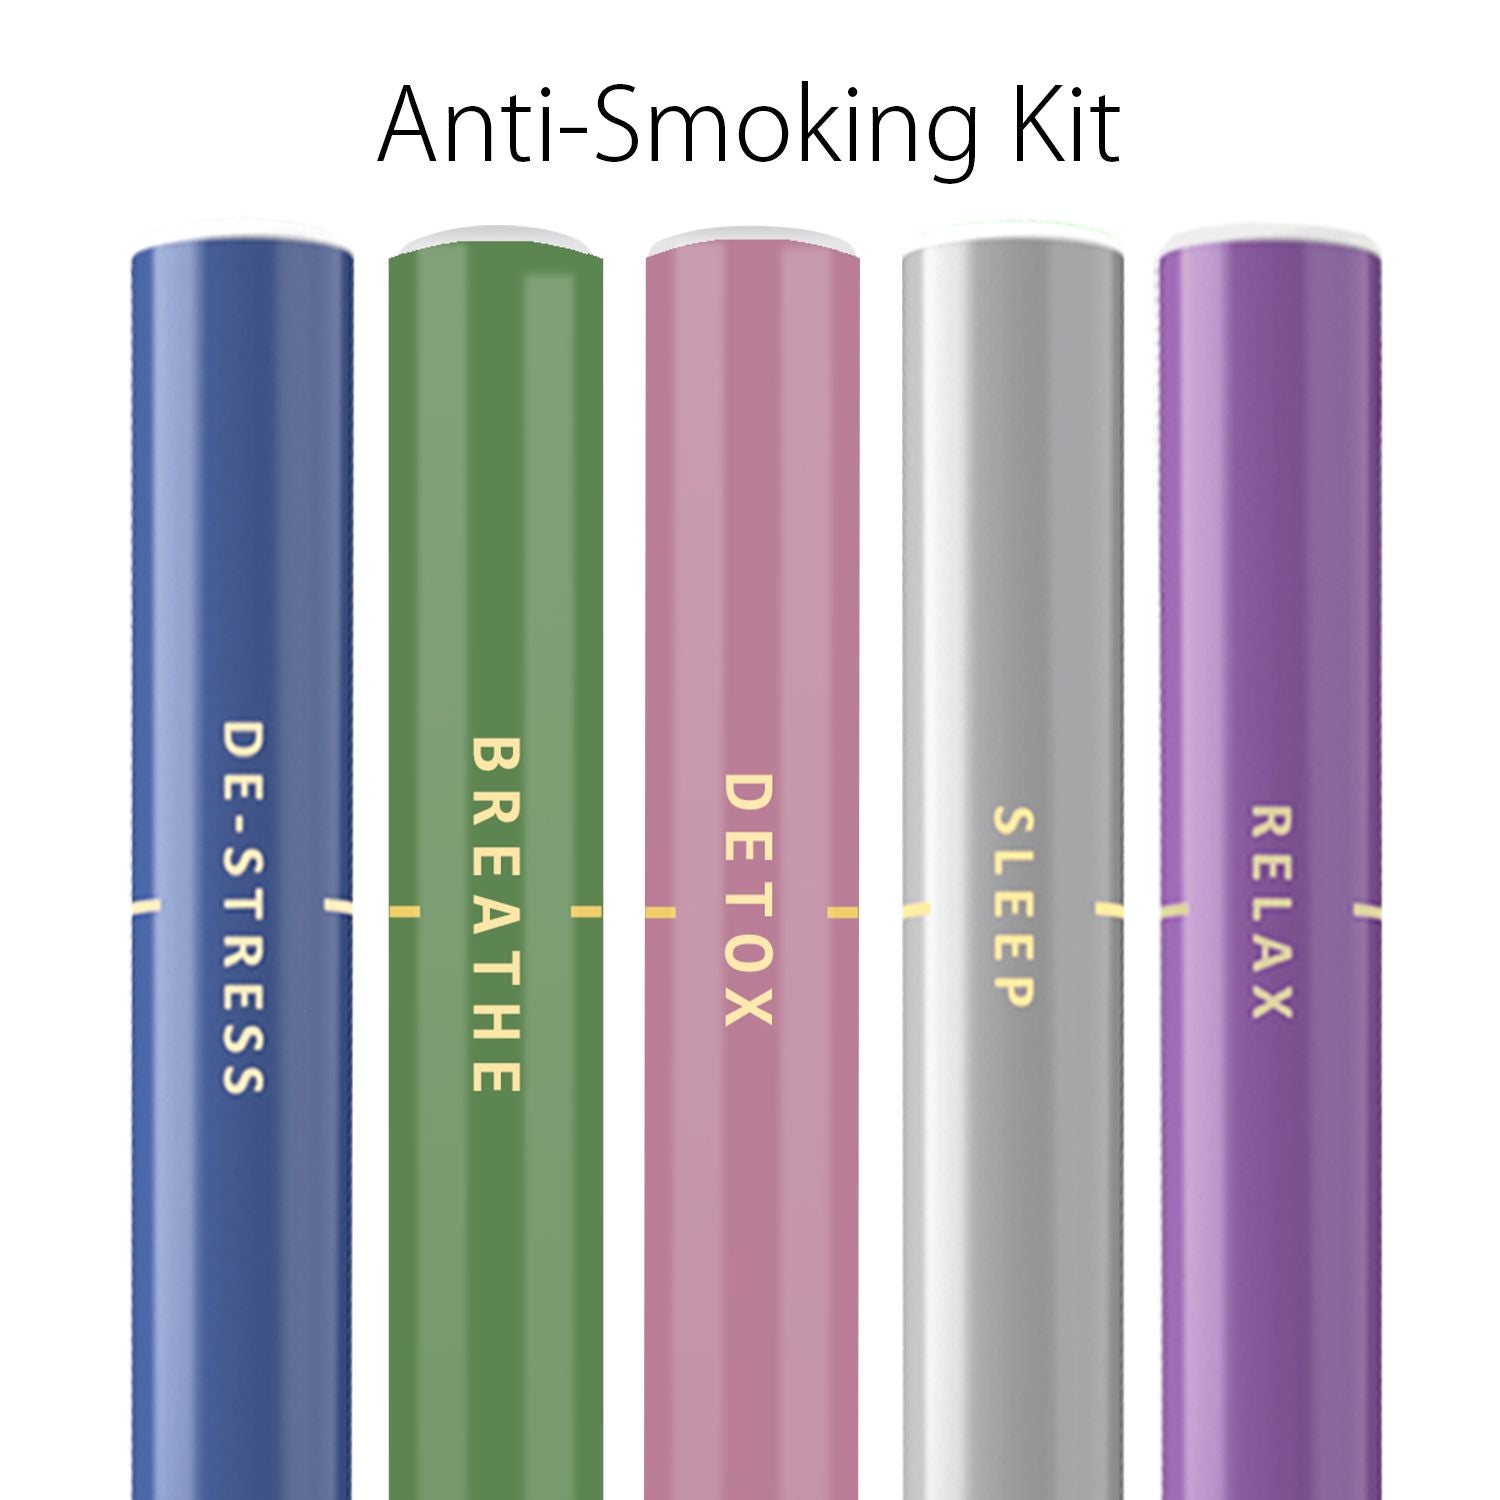 Anti-Smoking Kit – MyMoods